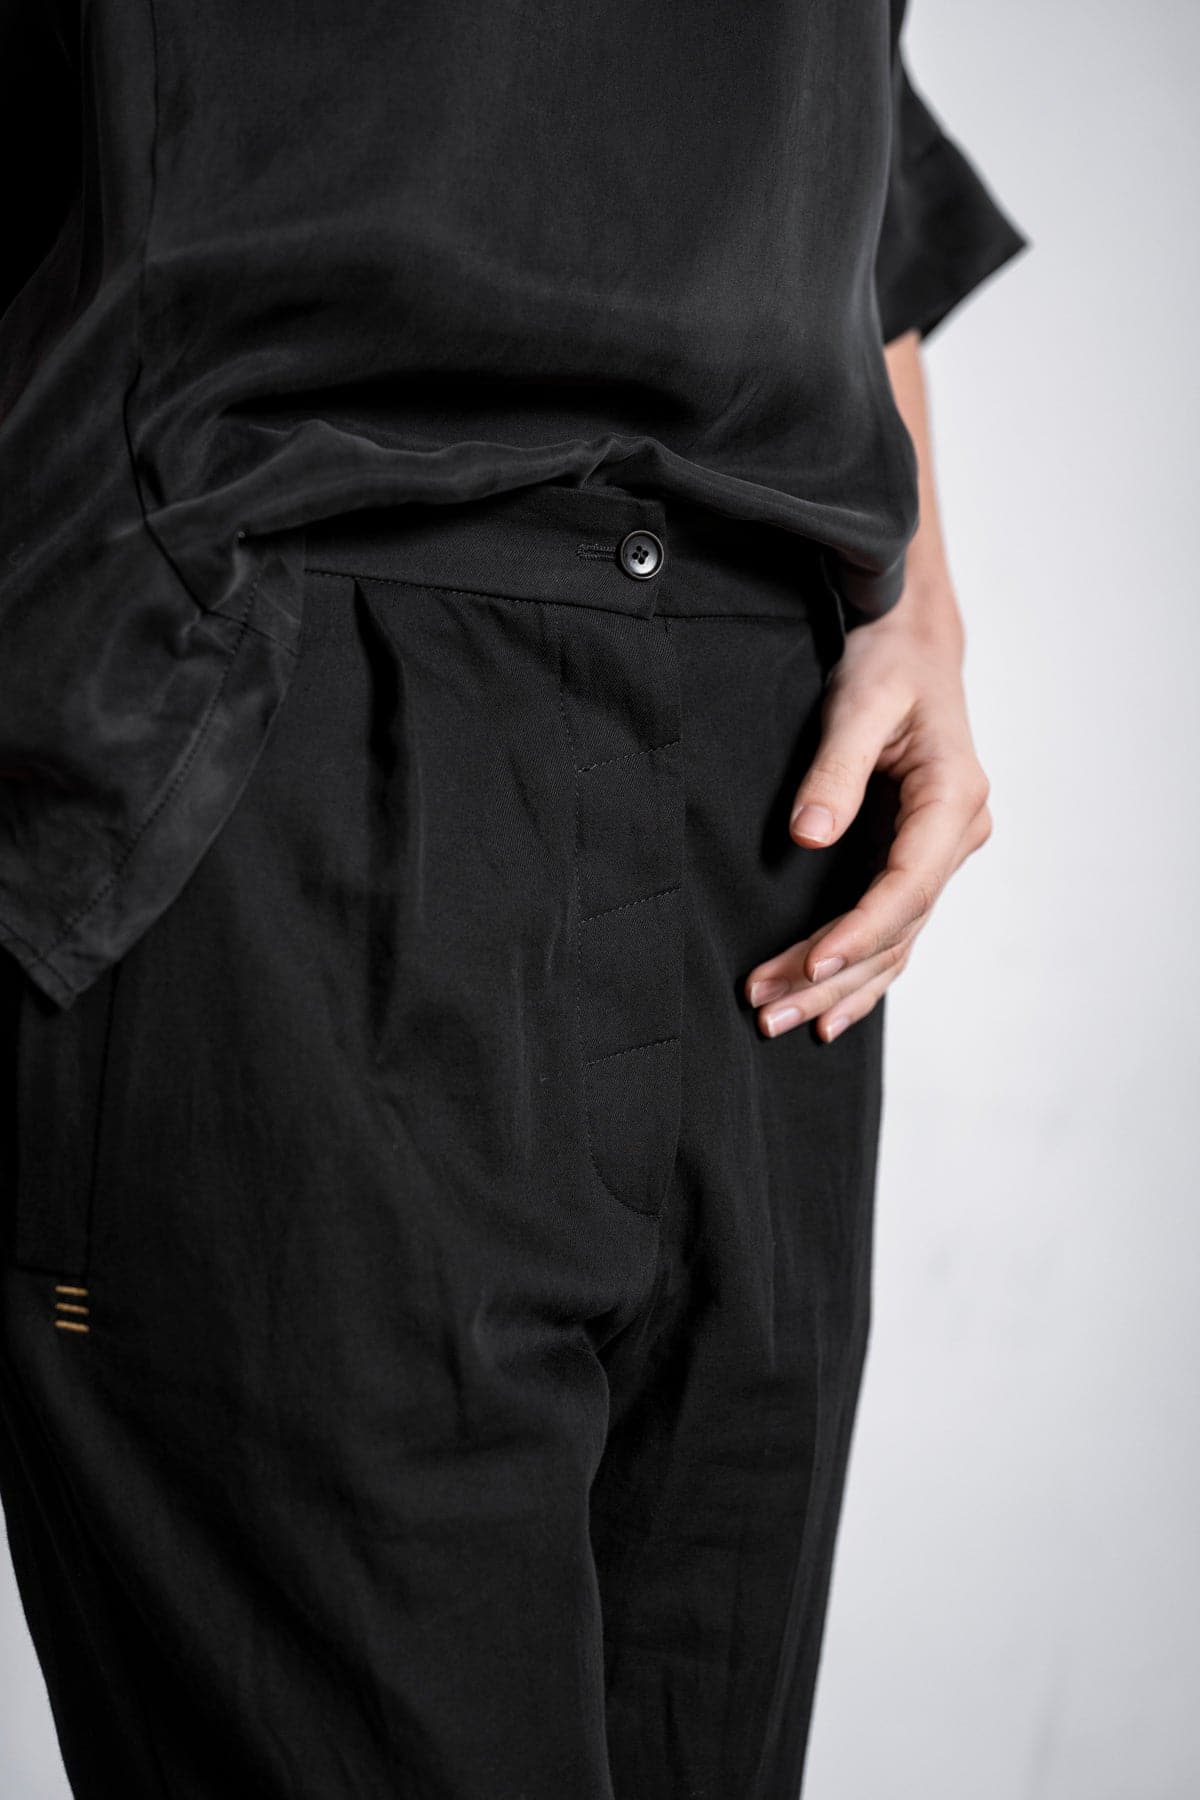 eigensinnig wien | Châtelet | Elegant women's trousers with small plea